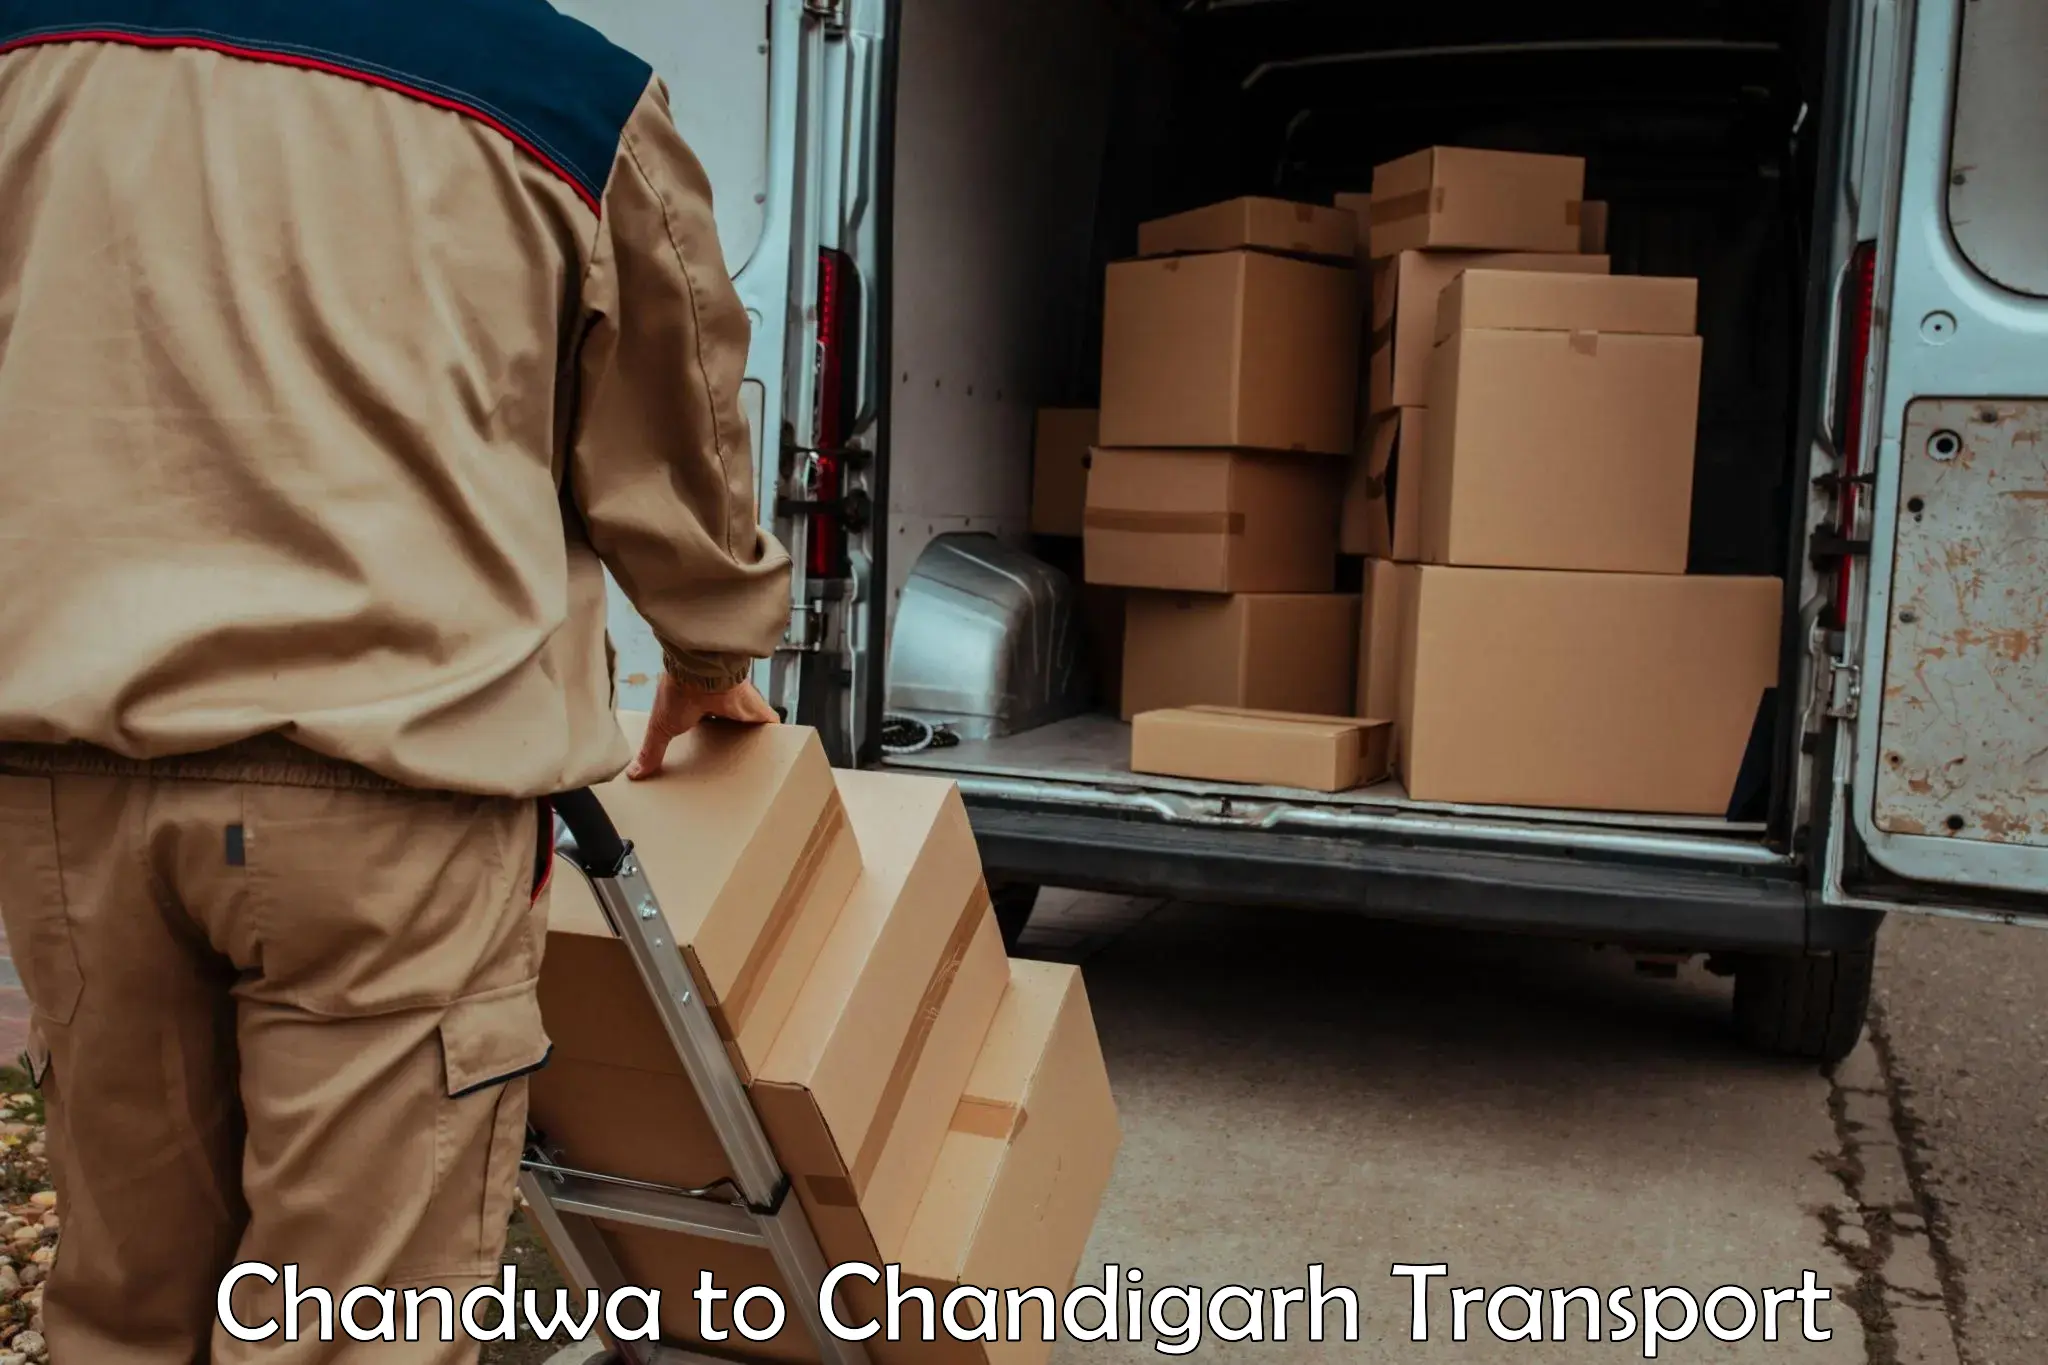 Online transport service Chandwa to Chandigarh